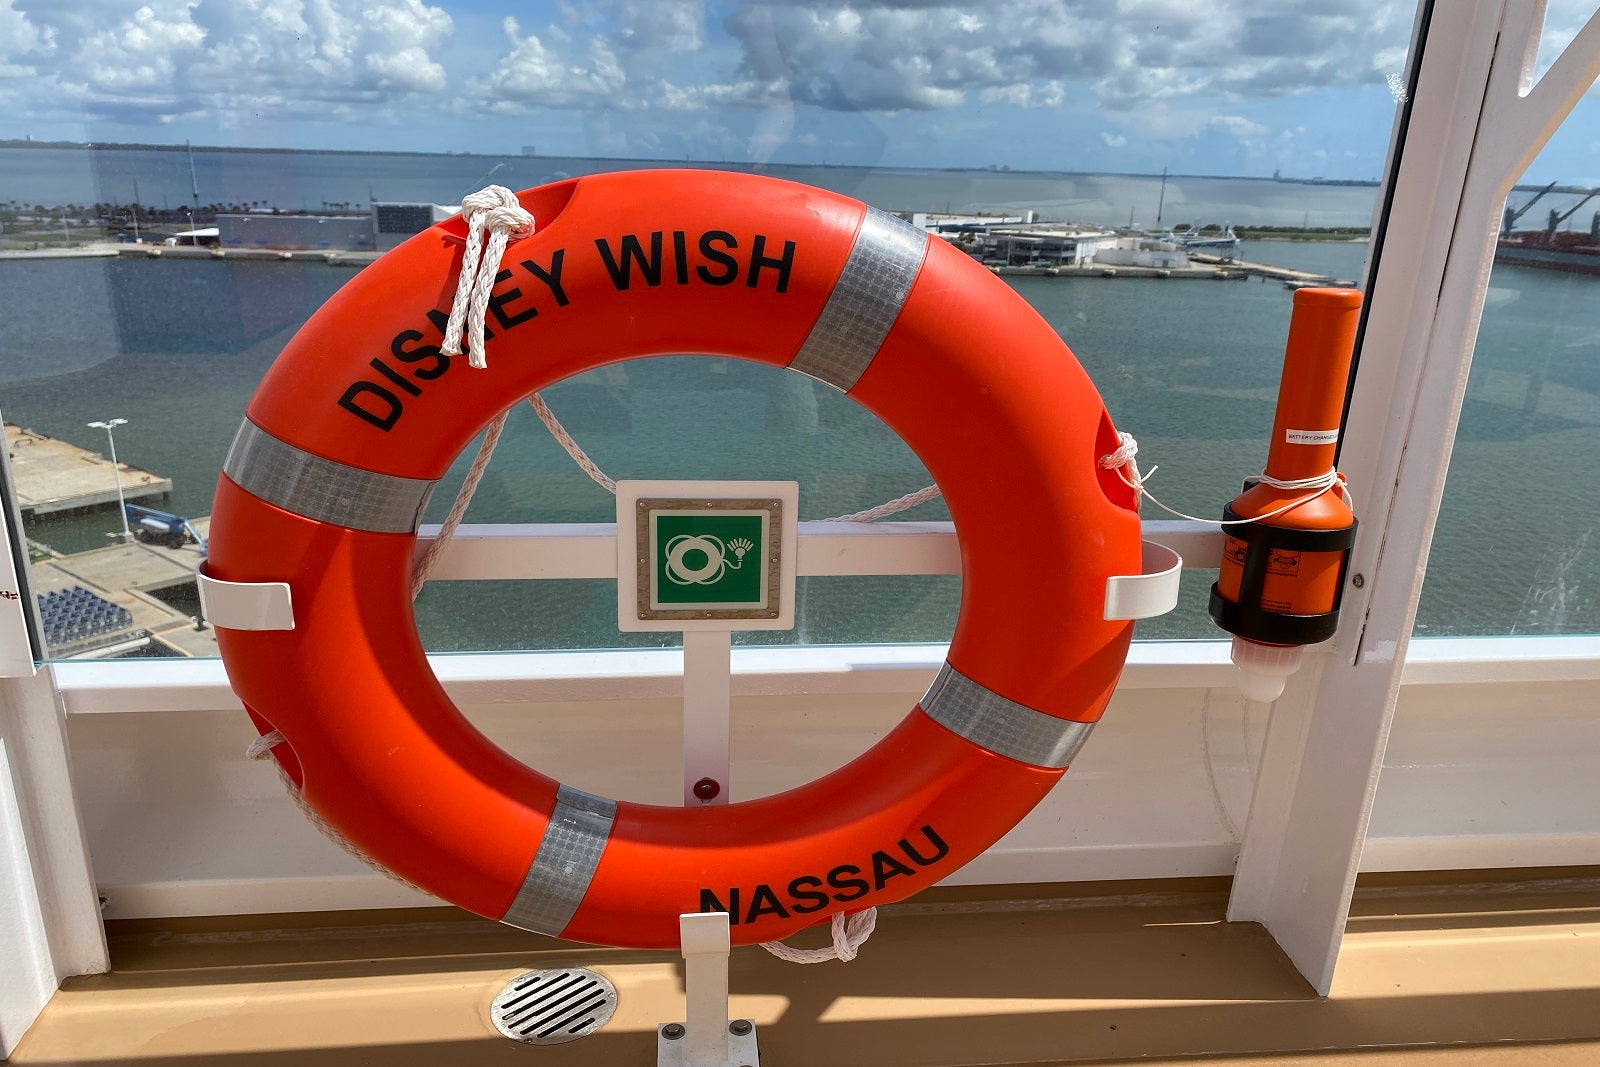 photos of disney cruise ships